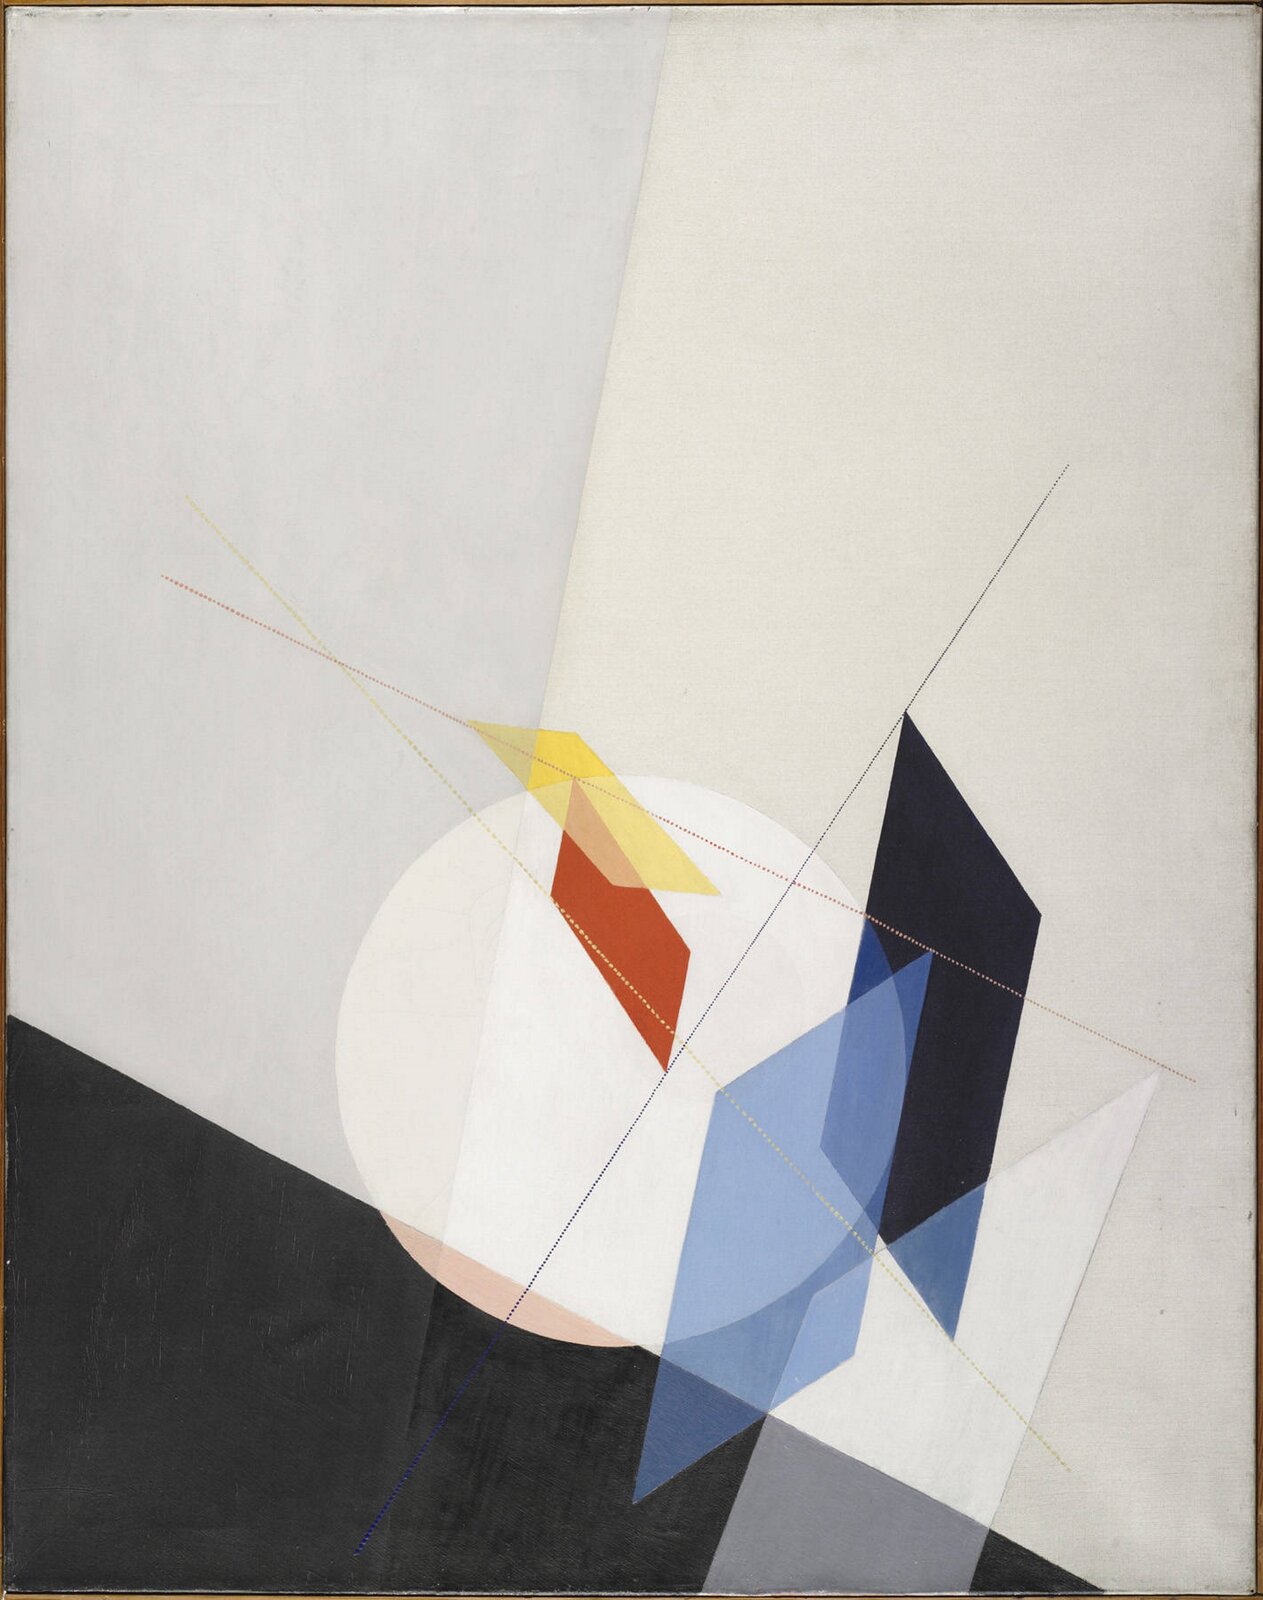 Ilustracja przedstawia obraz László Moholy-Nagy’ego „A 18”. Ukazuje różne, kolorowe geometryczne kształty, przenikające się i nachodzące na siebie. Przestrzeń podzielona jest na trzy pola: dolny, lewy róg zajmuje czarny trójkąt, a w górnej części tło dzieli się pionowo na dwie jasne płaszczyzny